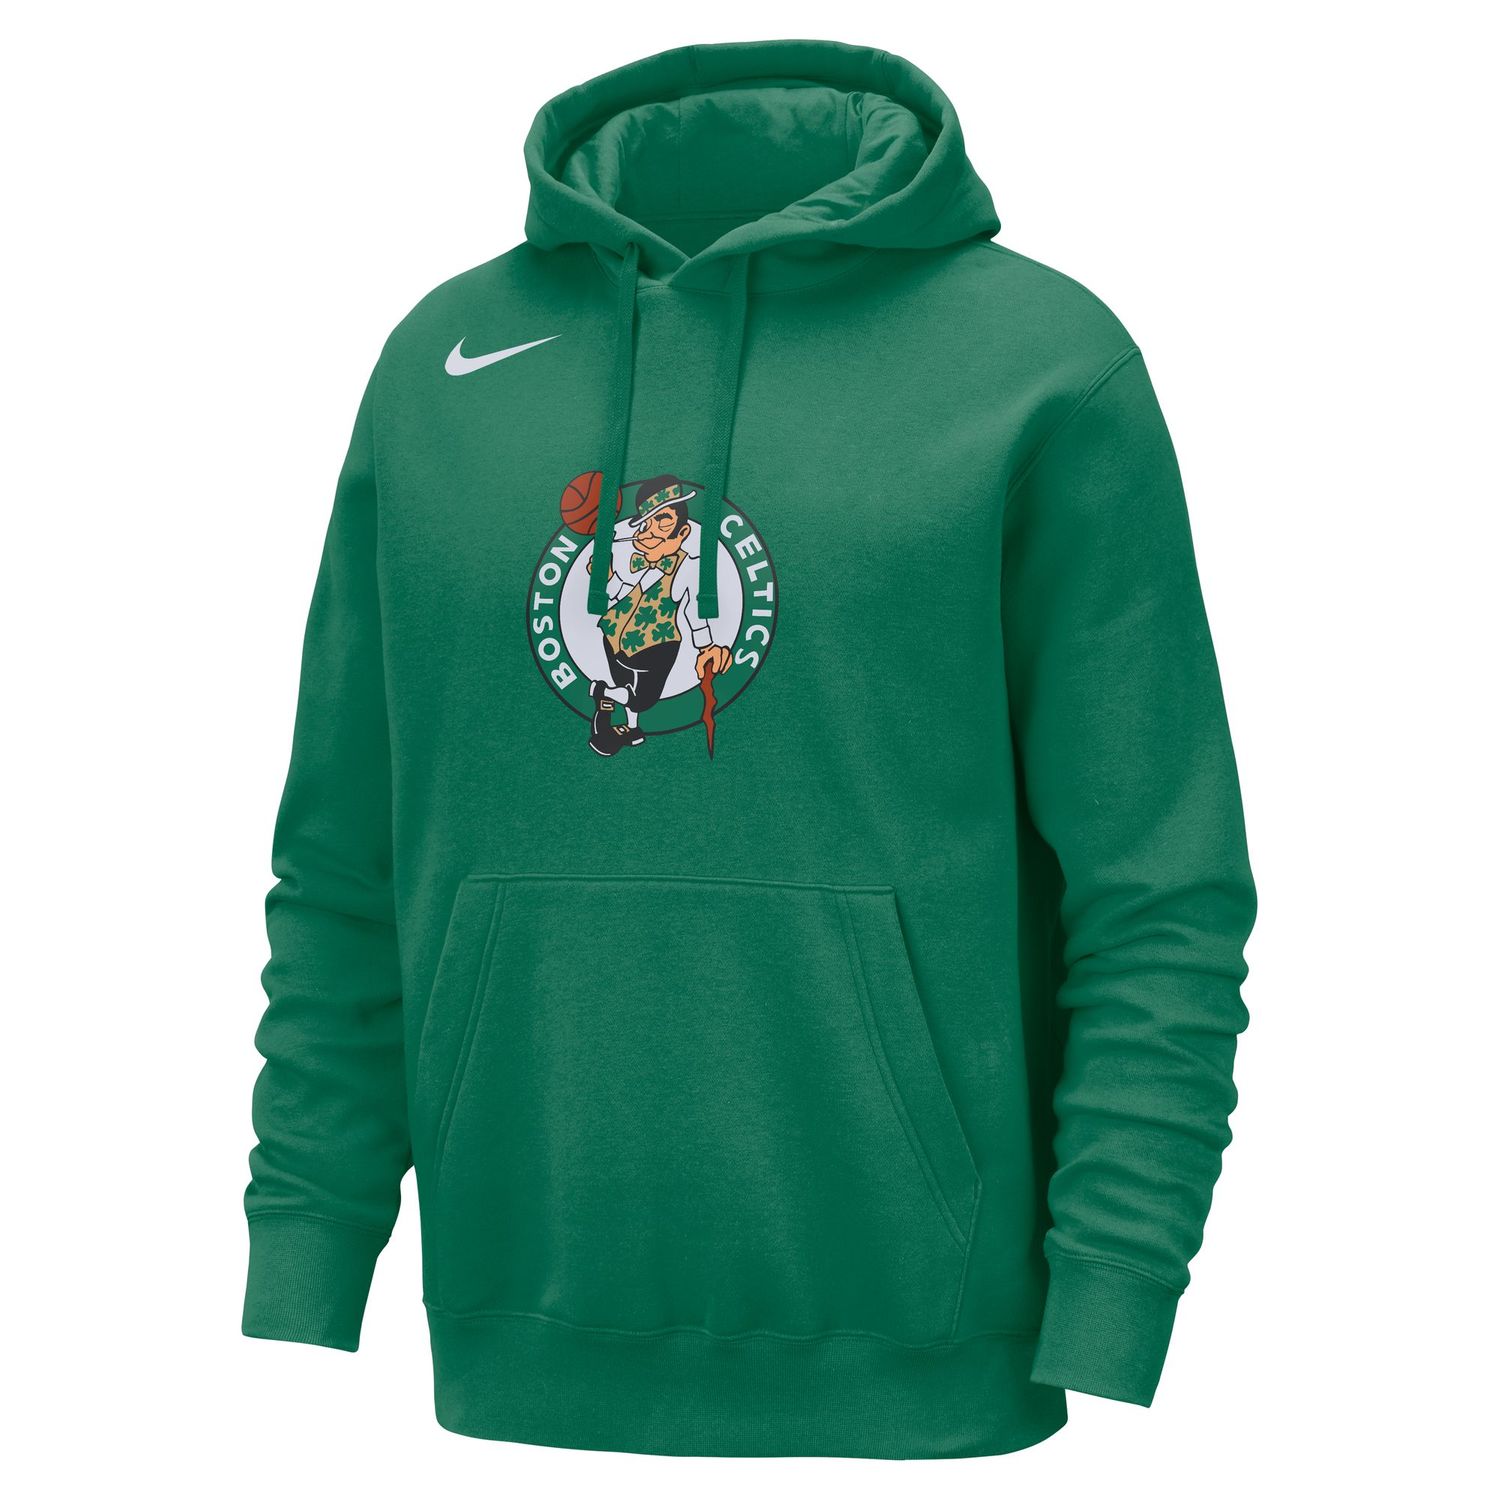 Nike NBA Boston Celtics Club PO Hoody